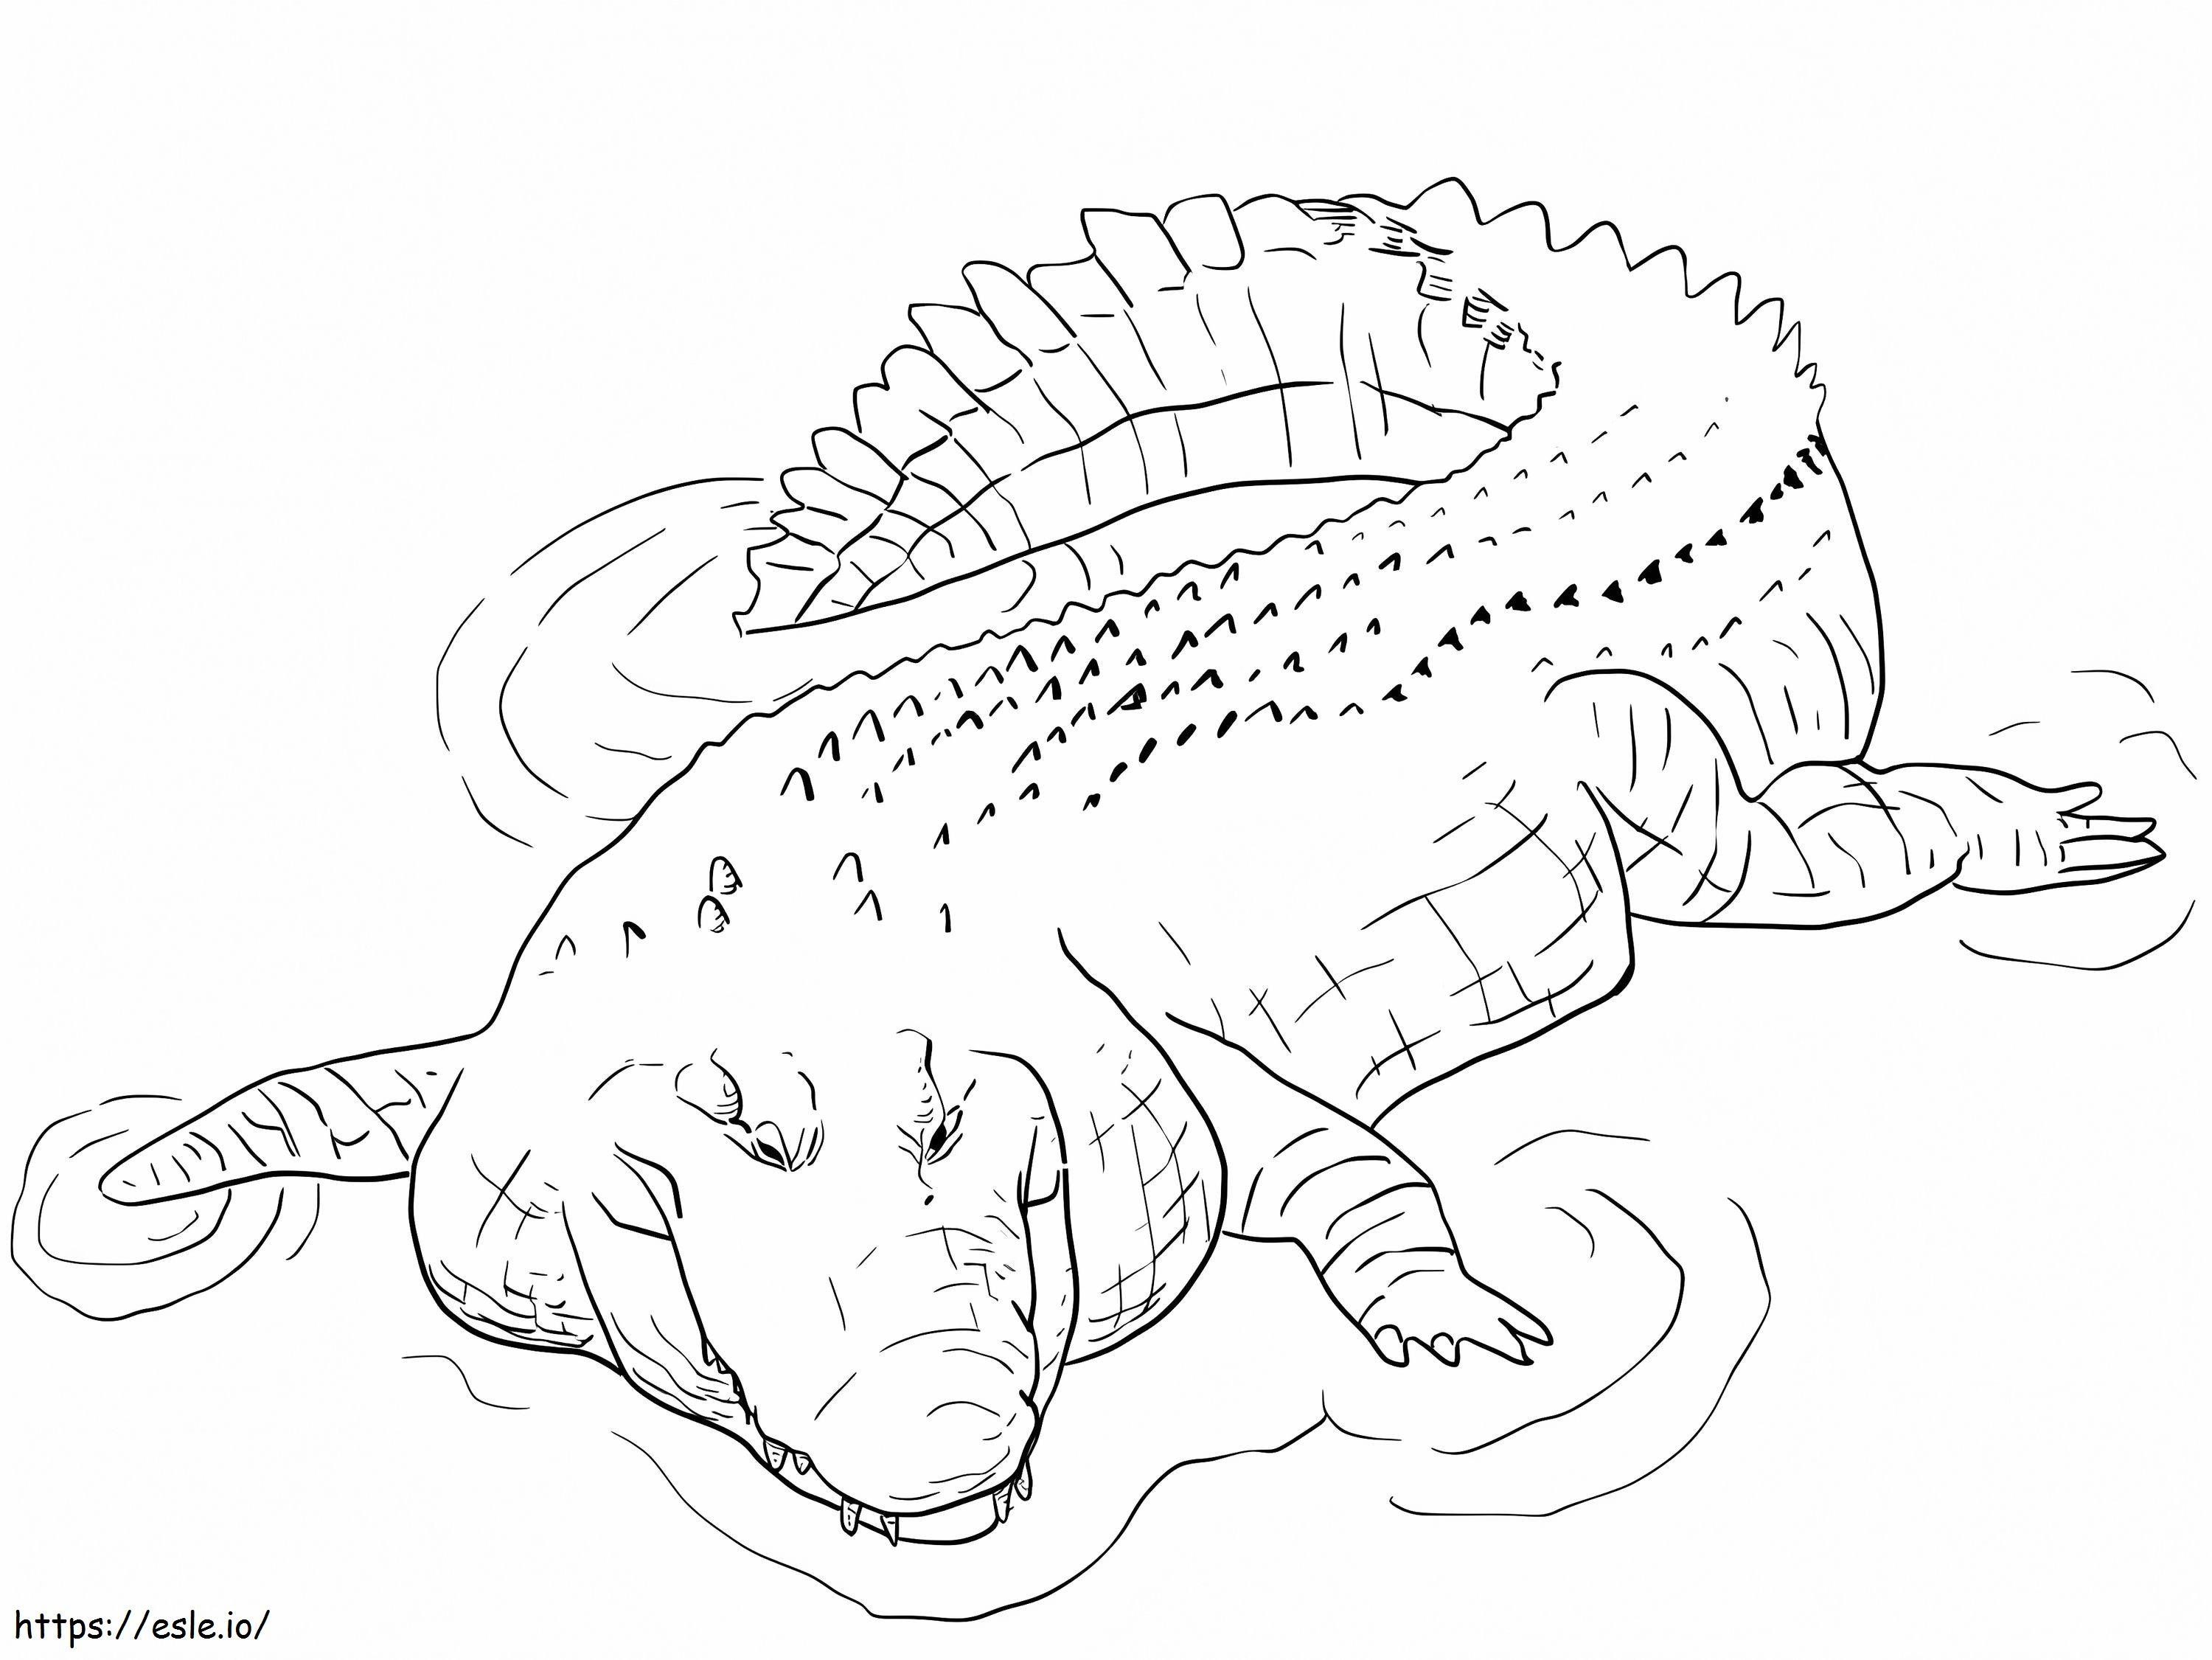 Coloriage Crocodile d'eau salée imprimable à imprimer dessin